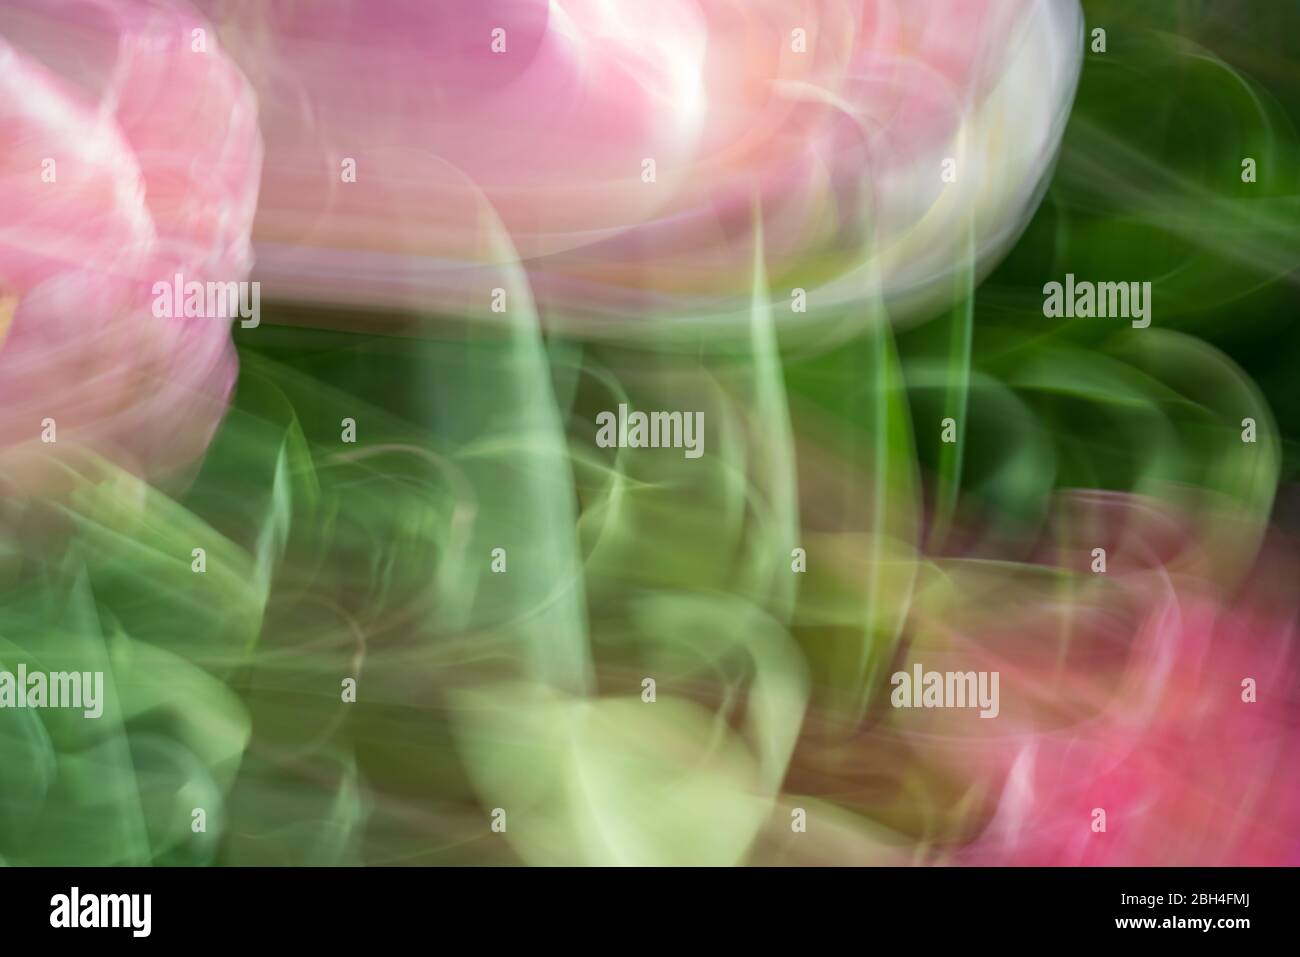 Image abstraite dans les couleurs du printemps créée avec un mouvement délibéré de caméra dans un jardin de tulipes dans un après-midi ensoleillé Banque D'Images